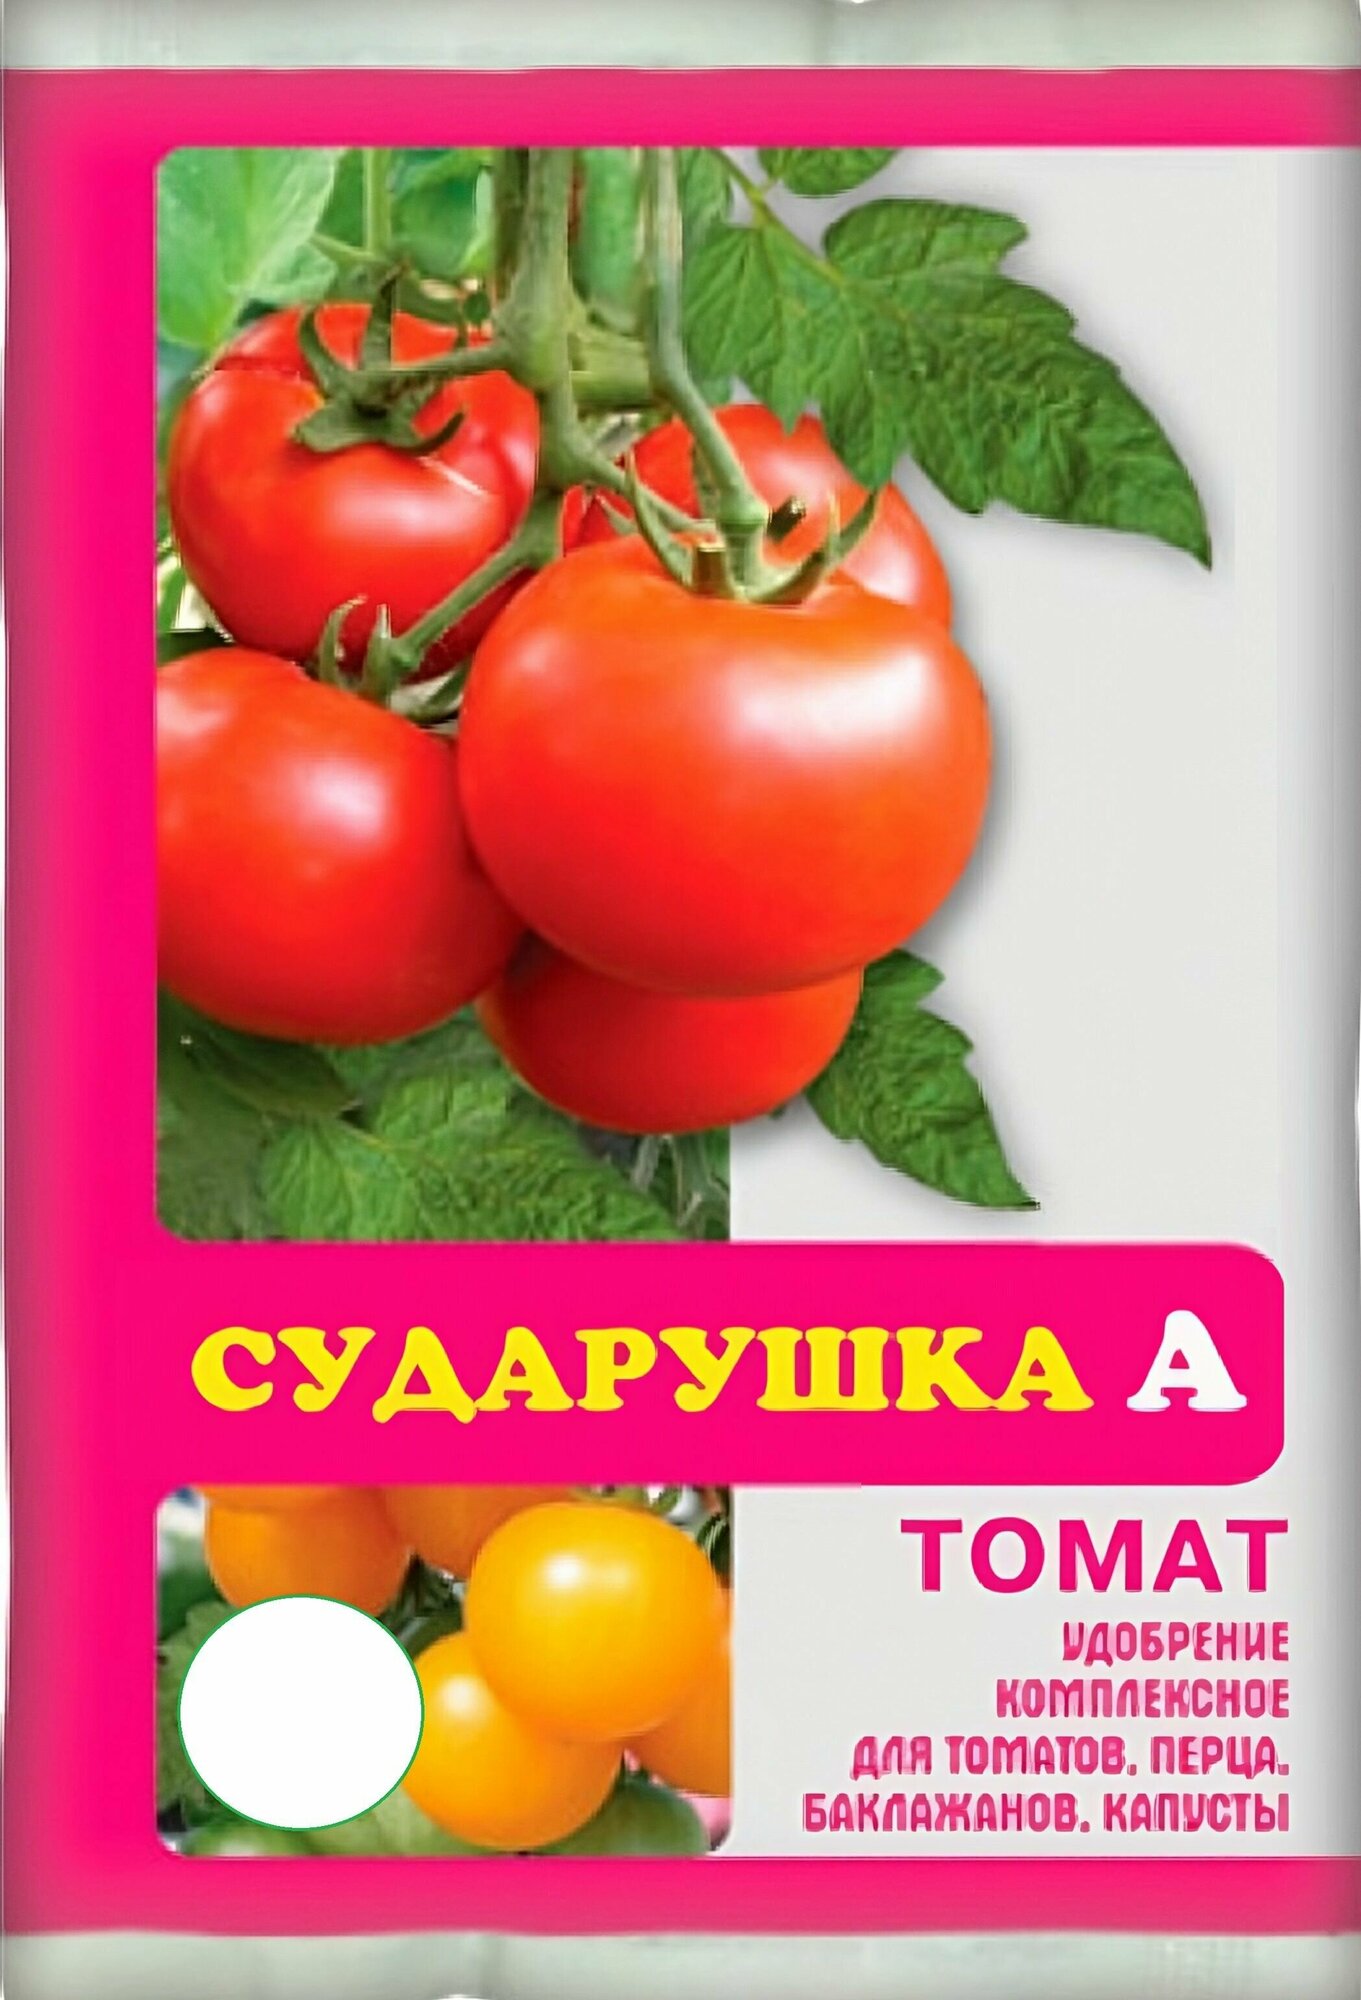 Удобрение для томатов комплексное "Сударушка" 60 г, также подходит для перцев, баклажанов и других овощных культур